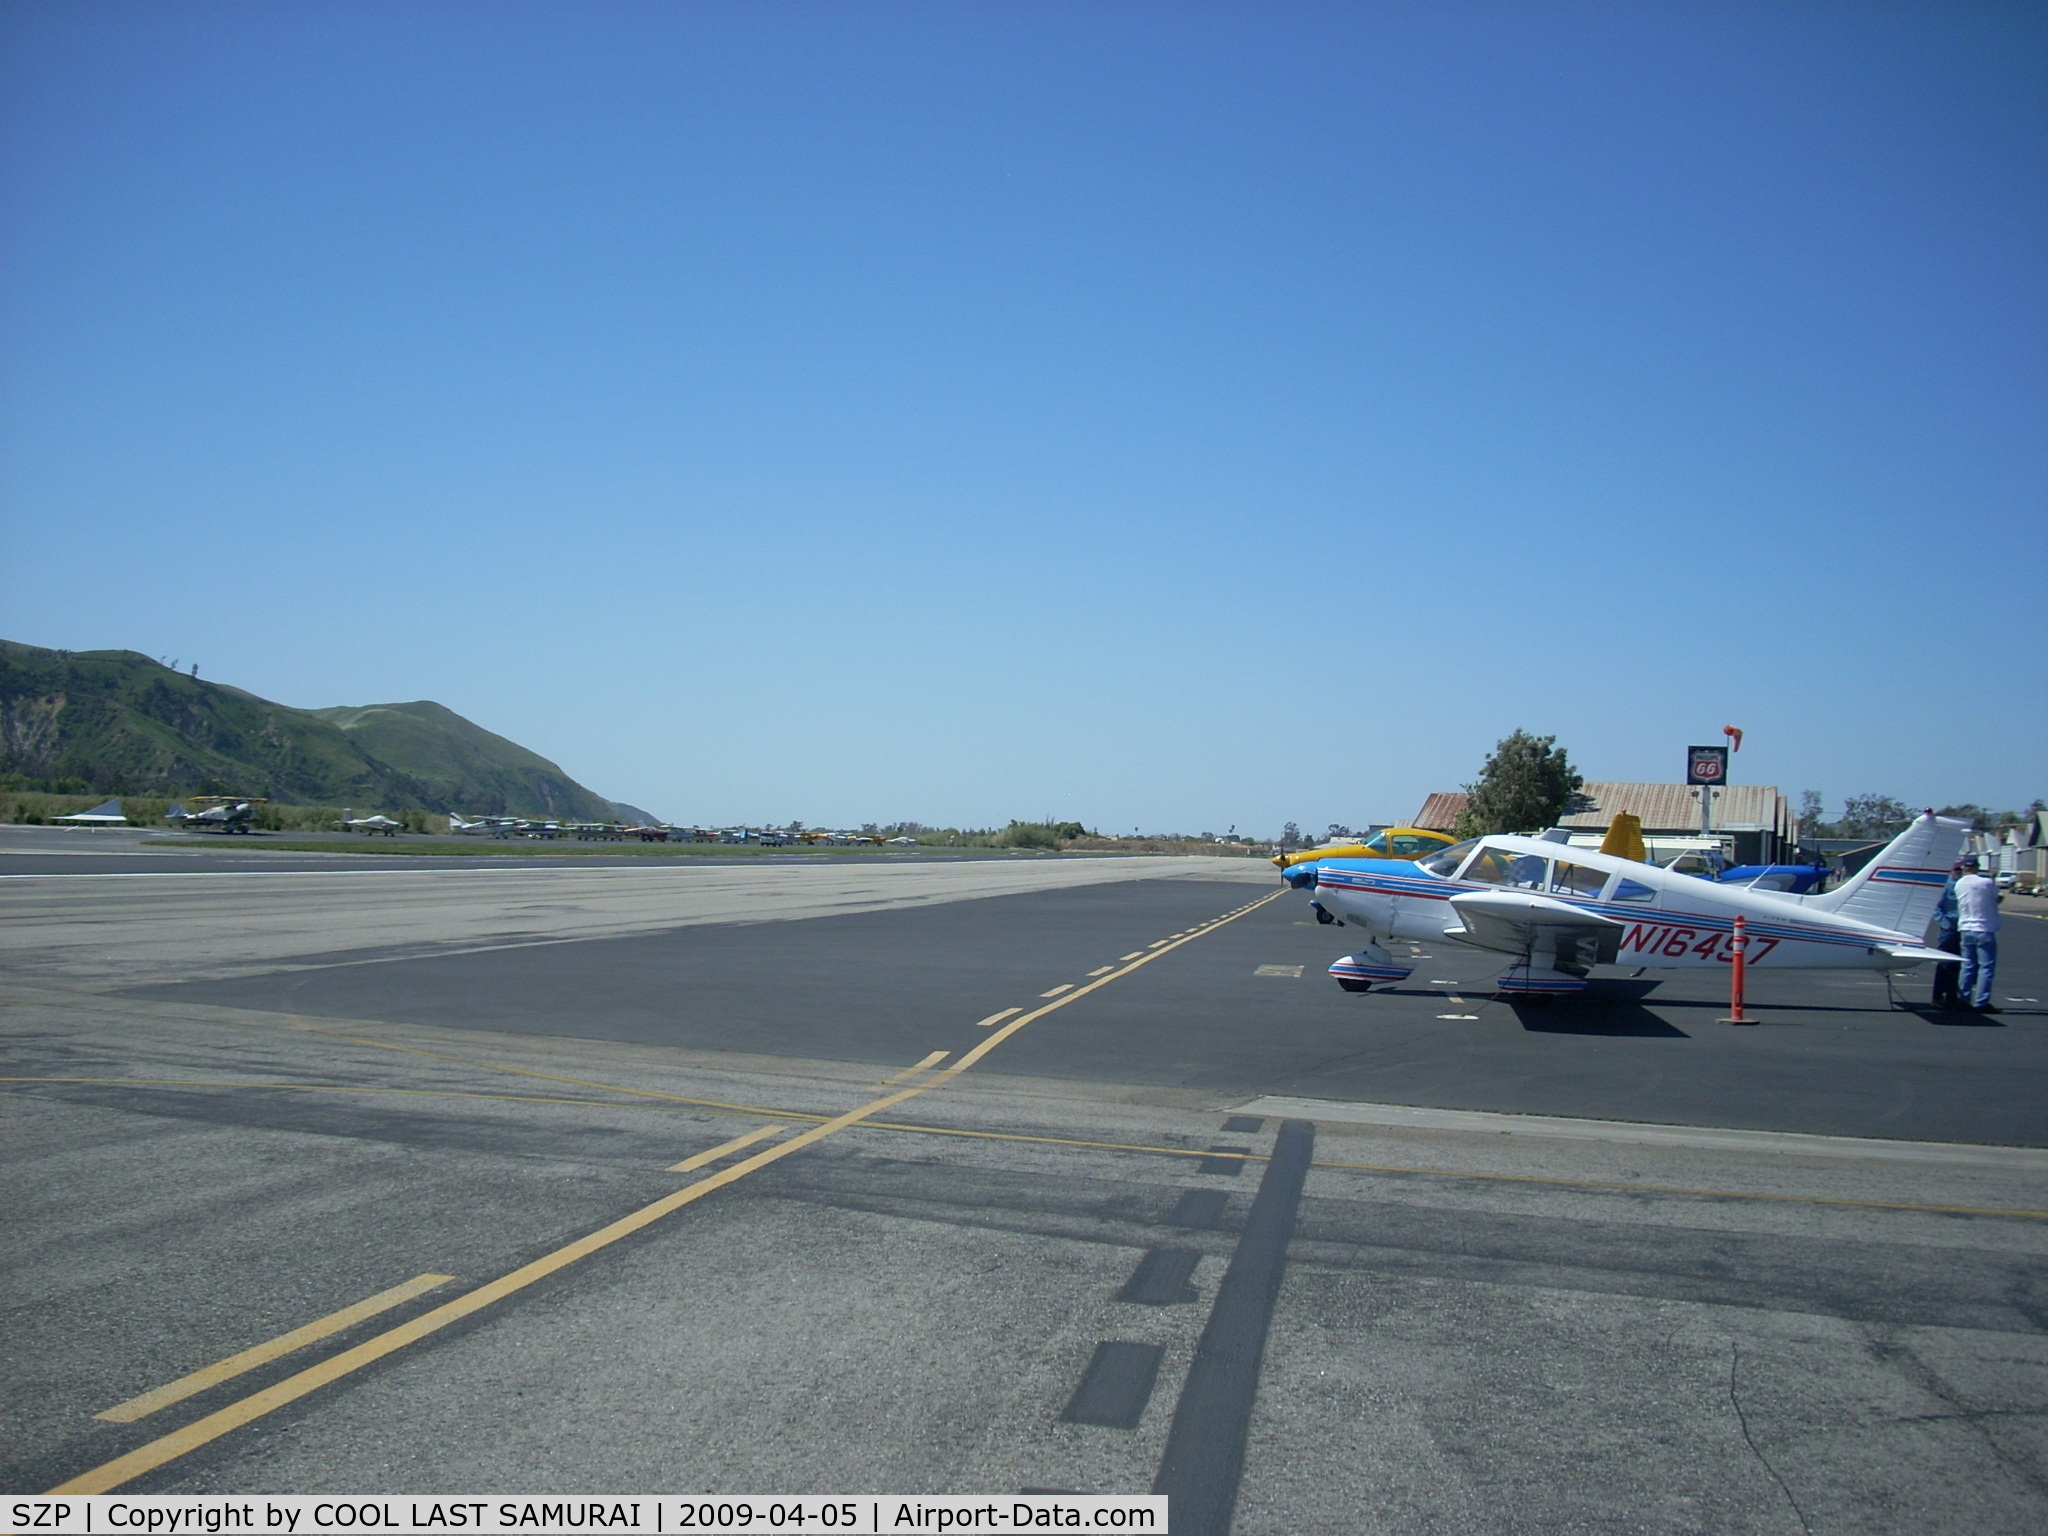 Santa Paula Airport (SZP) - Santa Paula Rwy4